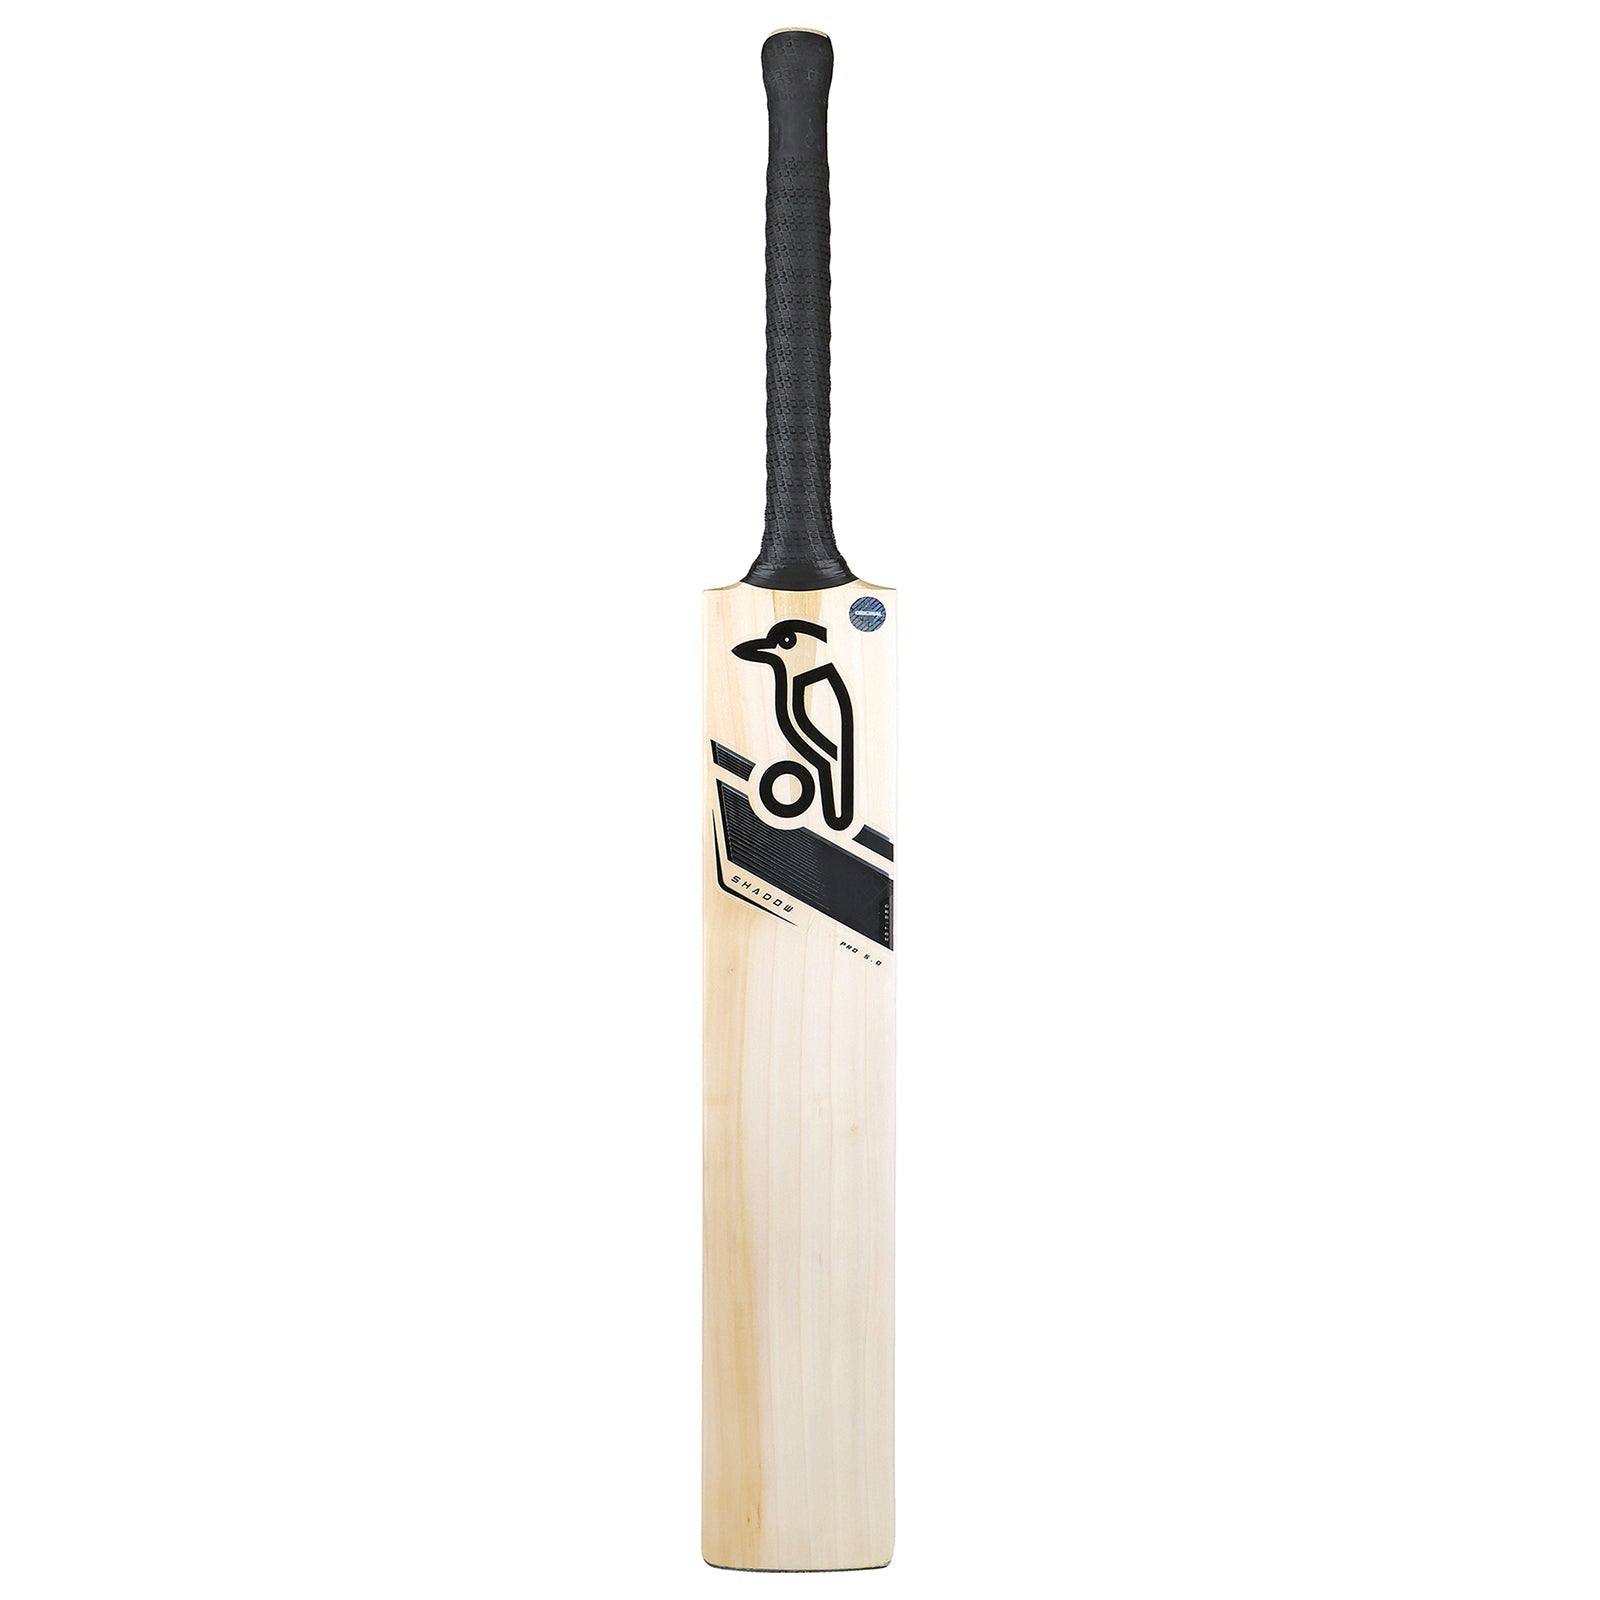 Kookaburra Shadow Pro 5.0 Cricket Bat - Small Adult